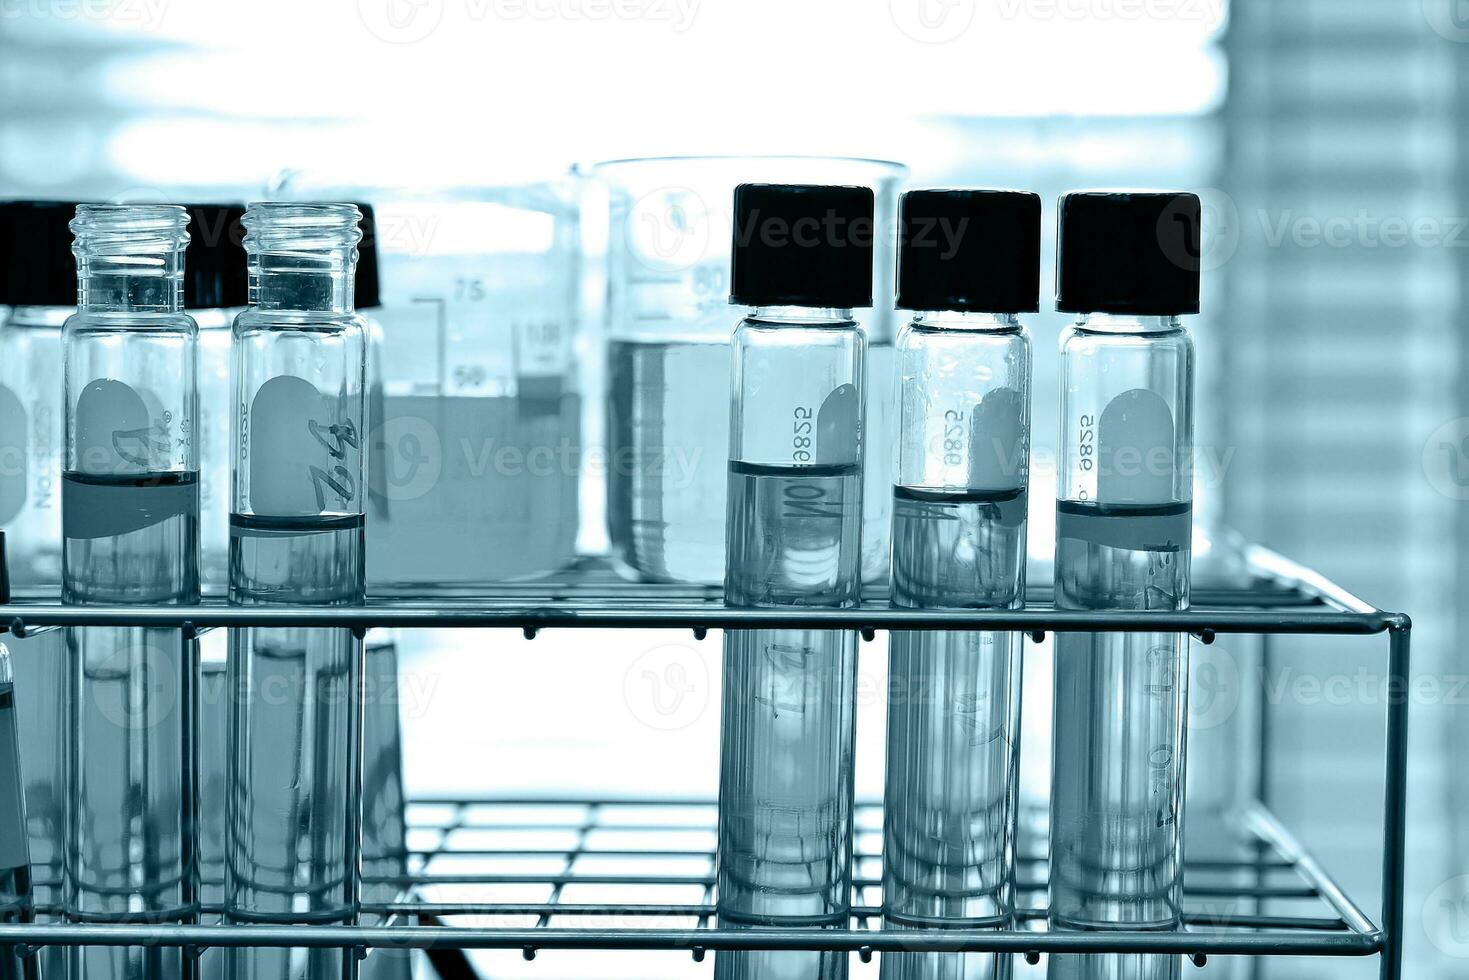 laboratorium glas på labb bakgrund i blå tona foto